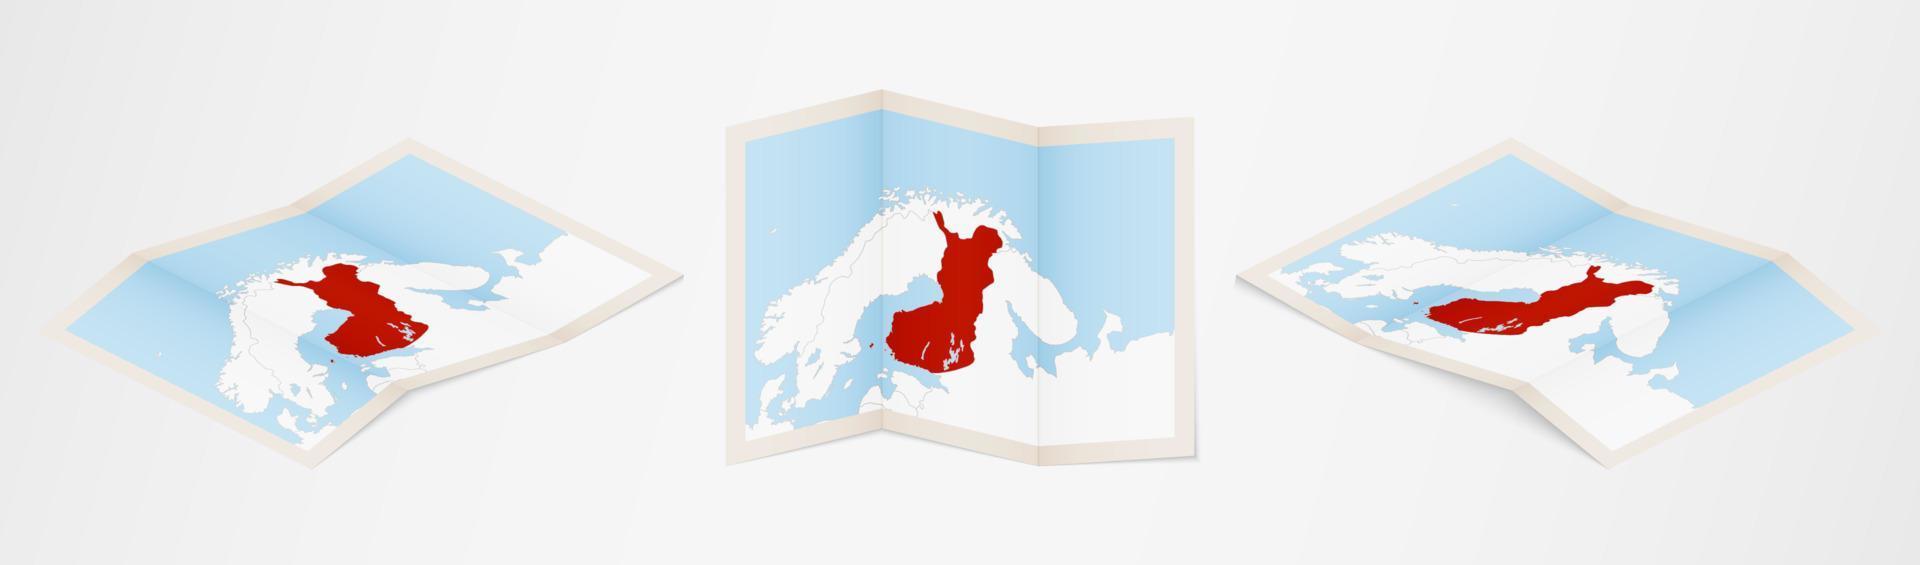 carte pliée de la finlande en trois versions différentes. vecteur